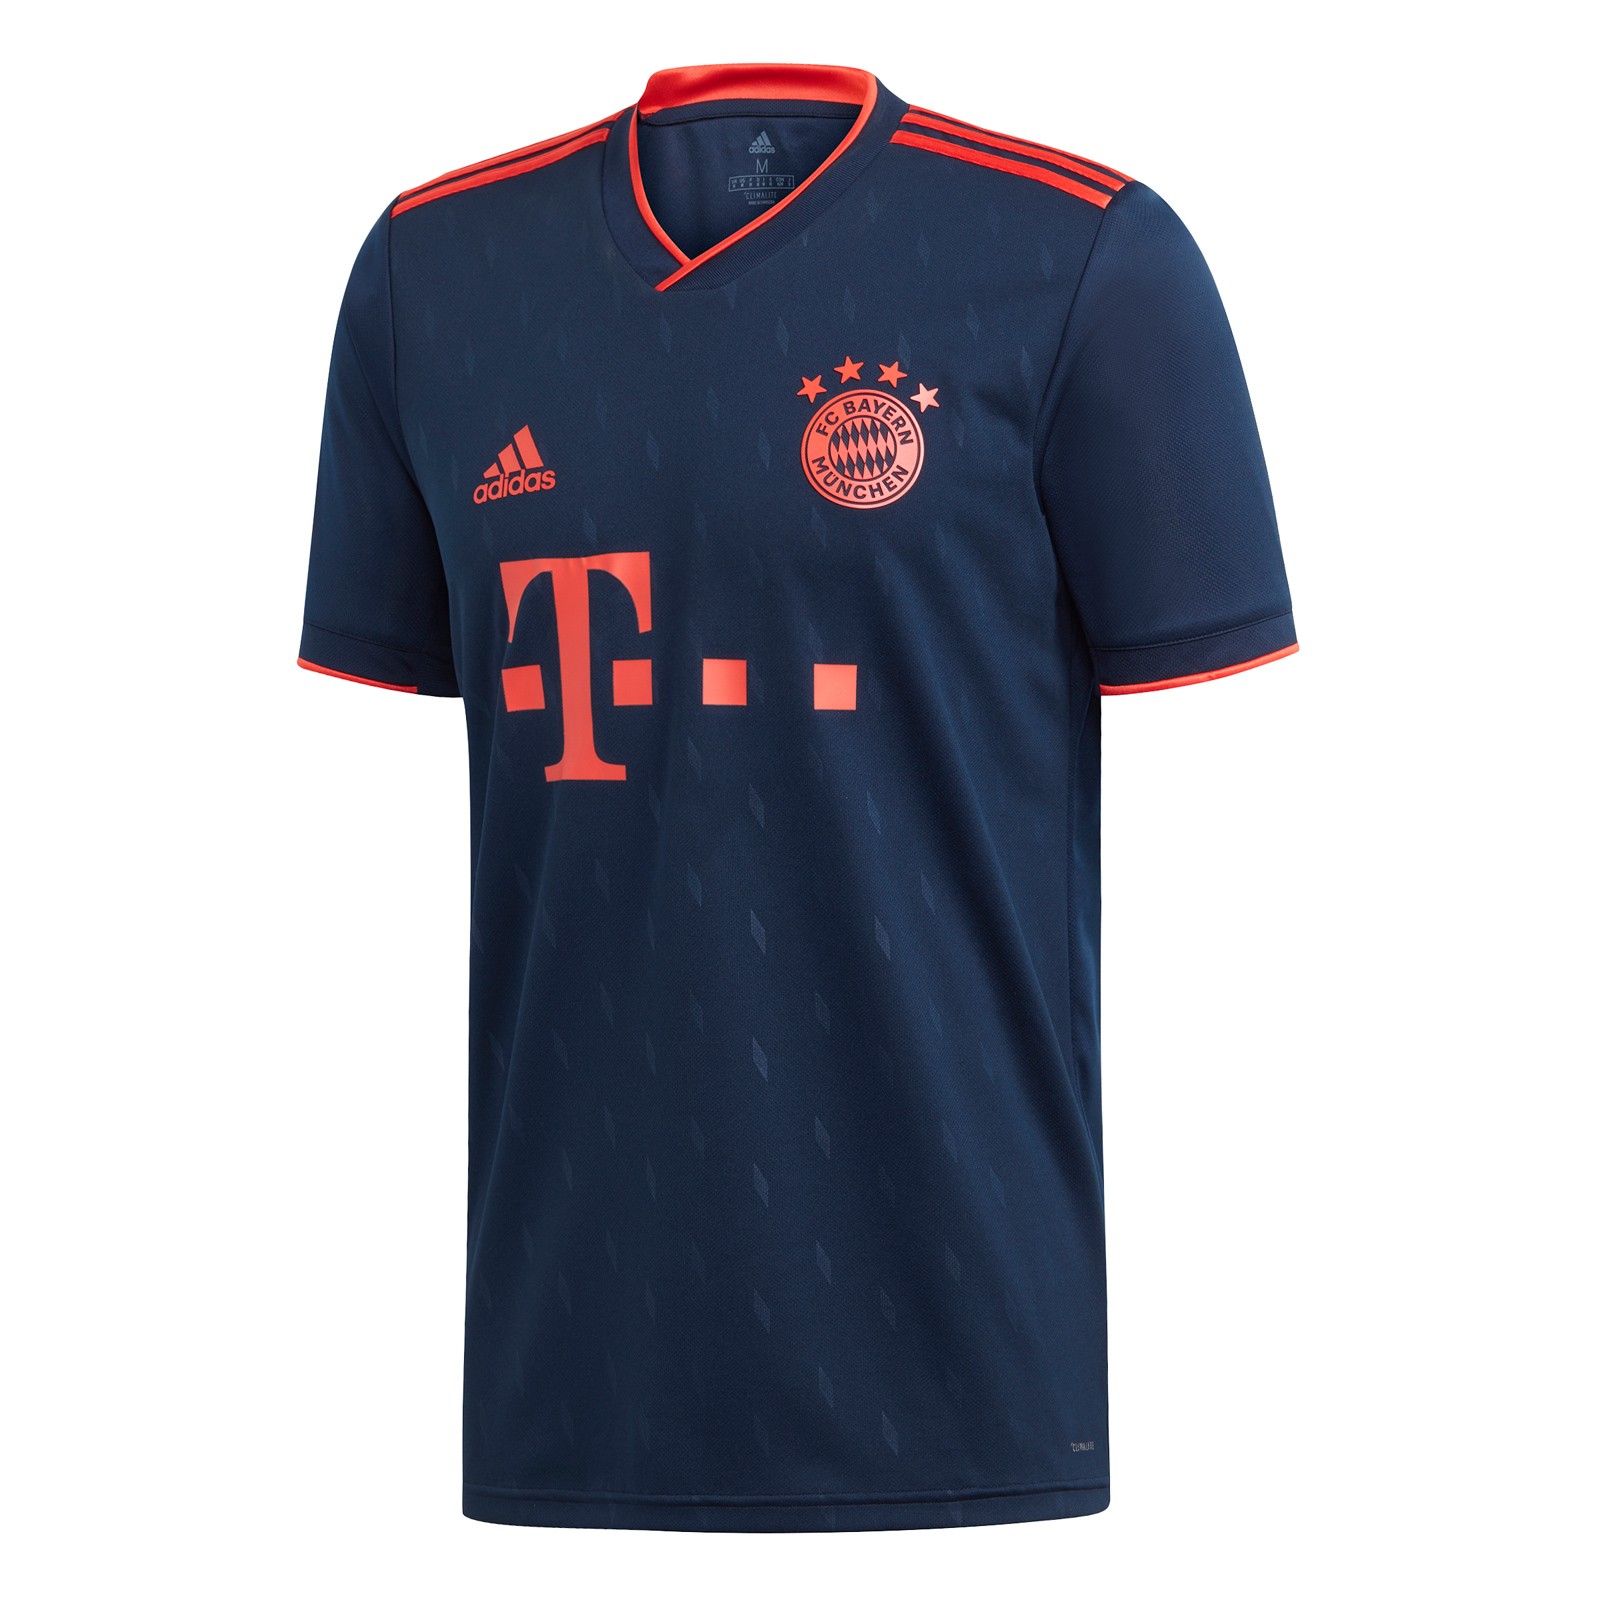 拜仁慕尼黑2019-20赛季欧冠联赛球迷版球衣